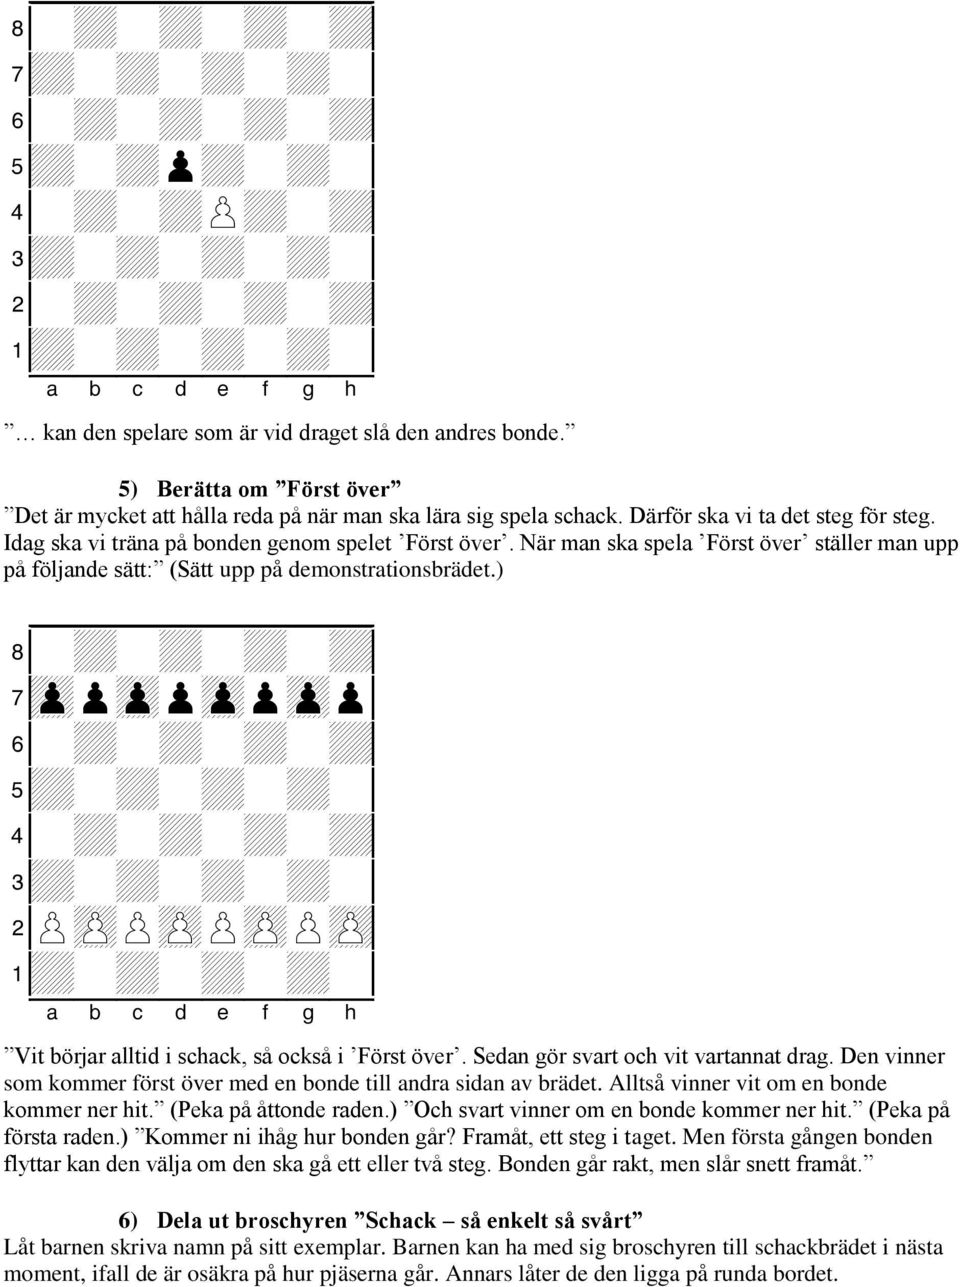 ) 7zppzppzppzpp0 2PzPPzPPzPPzP0 Vit börjar alltid i schack, så också i Först över. Sedan gör svart och vit vartannat drag. Den vinner som kommer först över med en bonde till andra sidan av brädet.